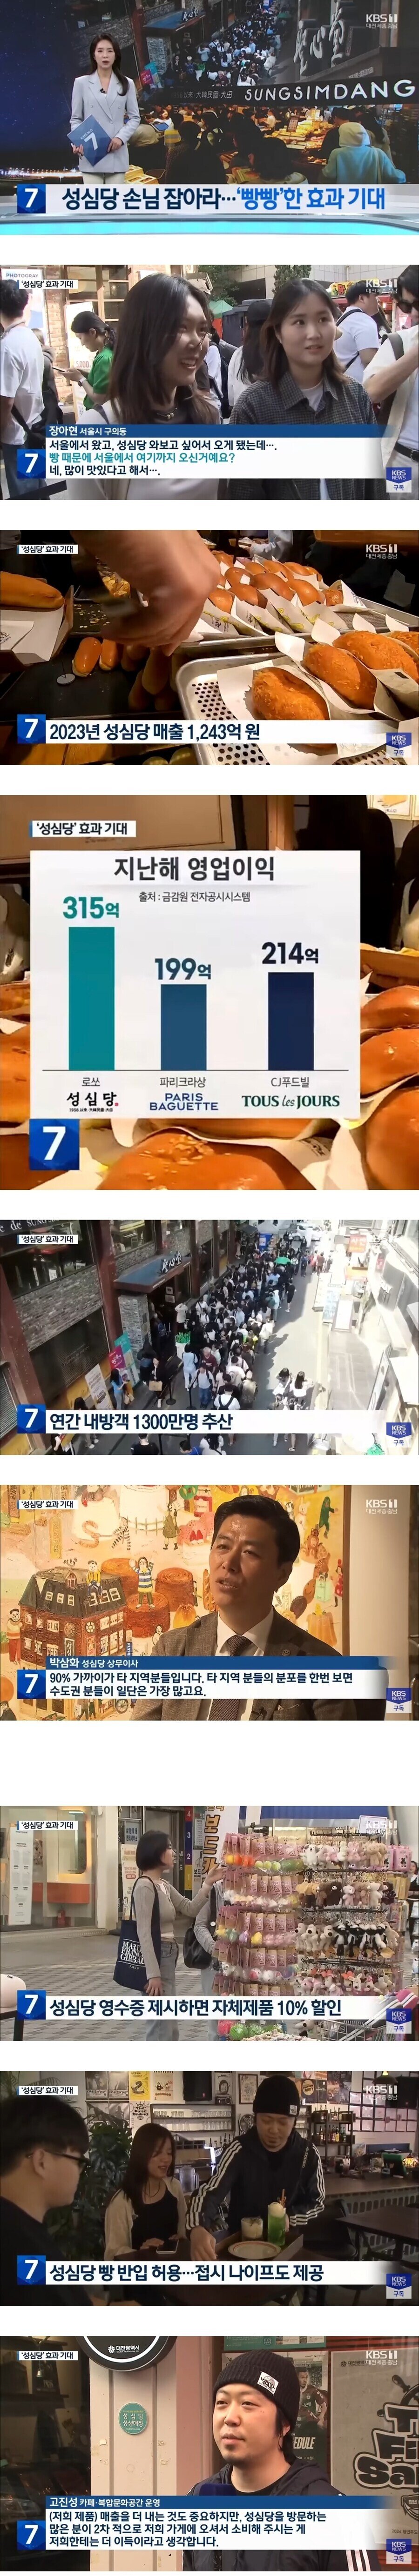 기회를 잘 잡고있는 대전 성심당 주변 가게들.news